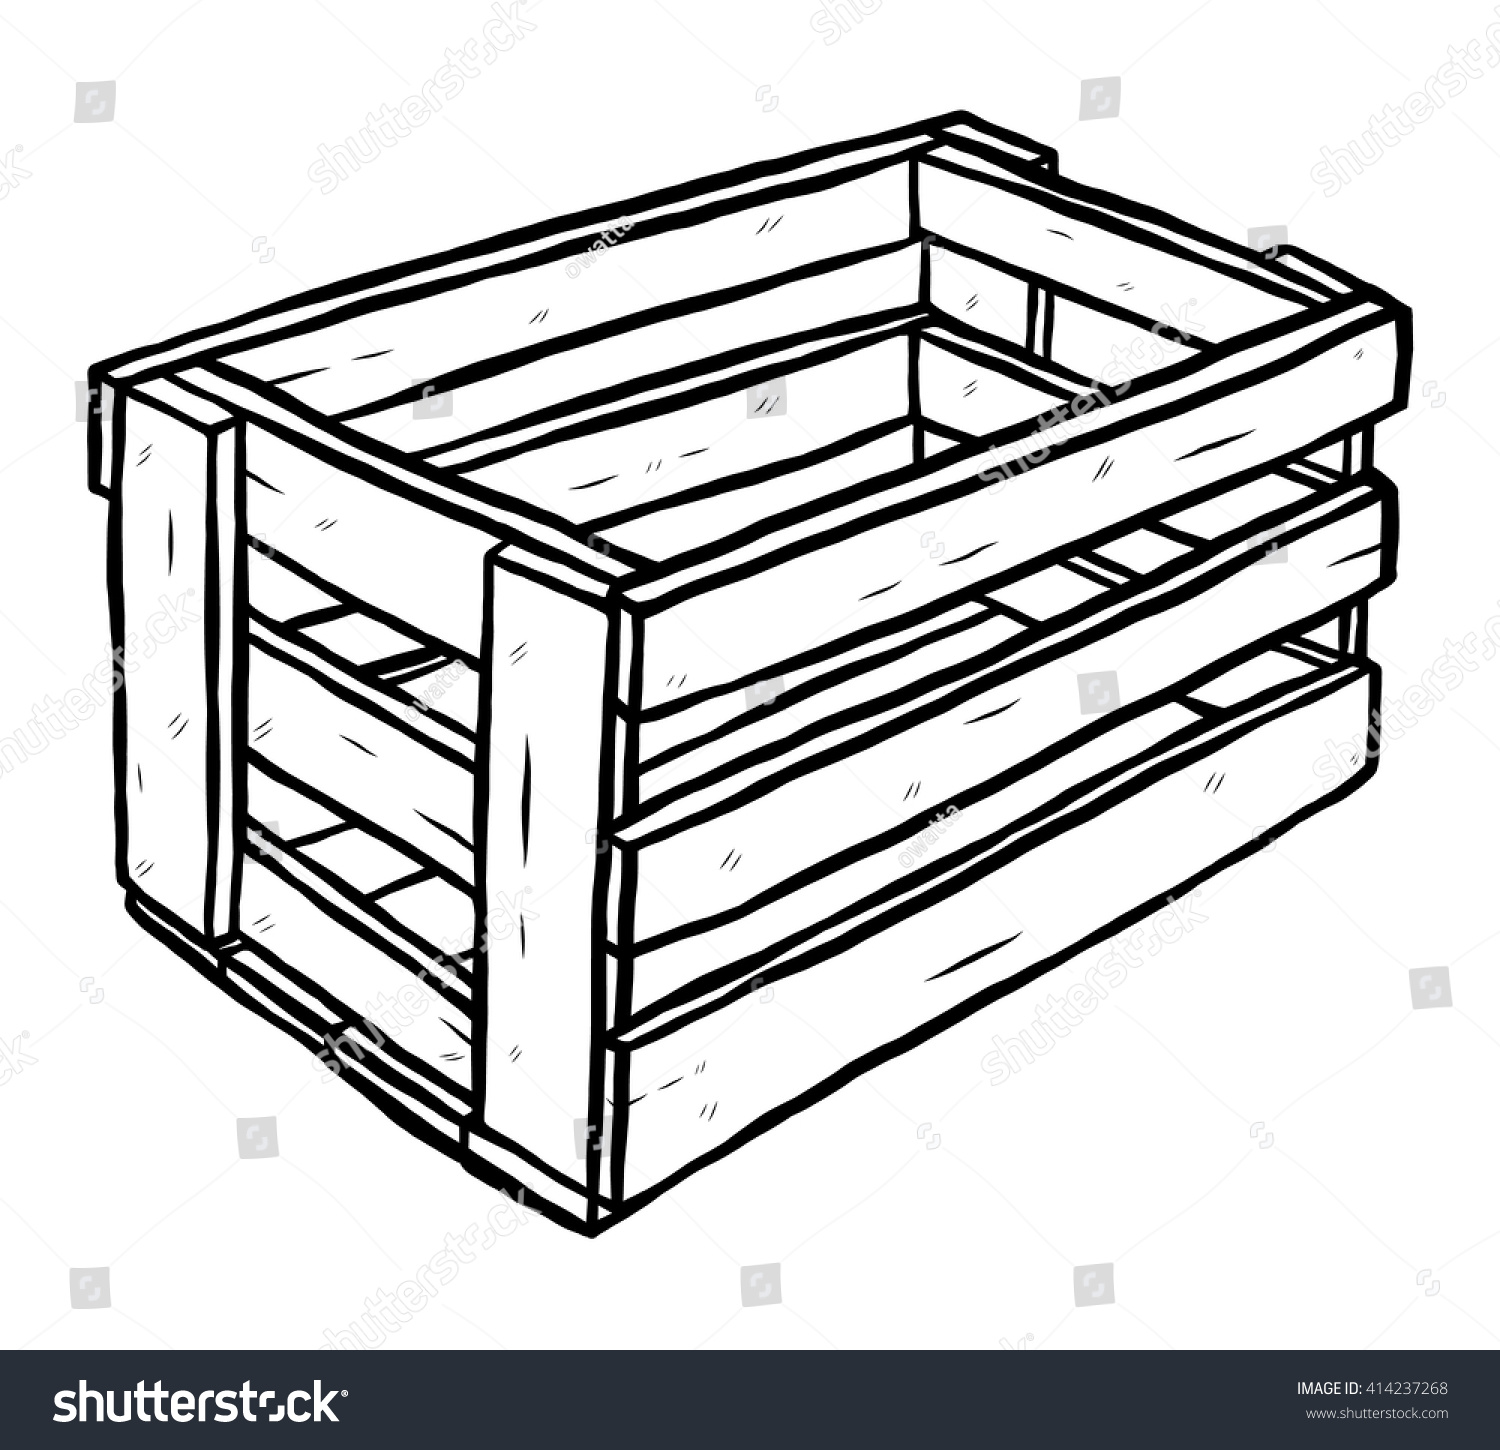 Рисованный деревянный ящик